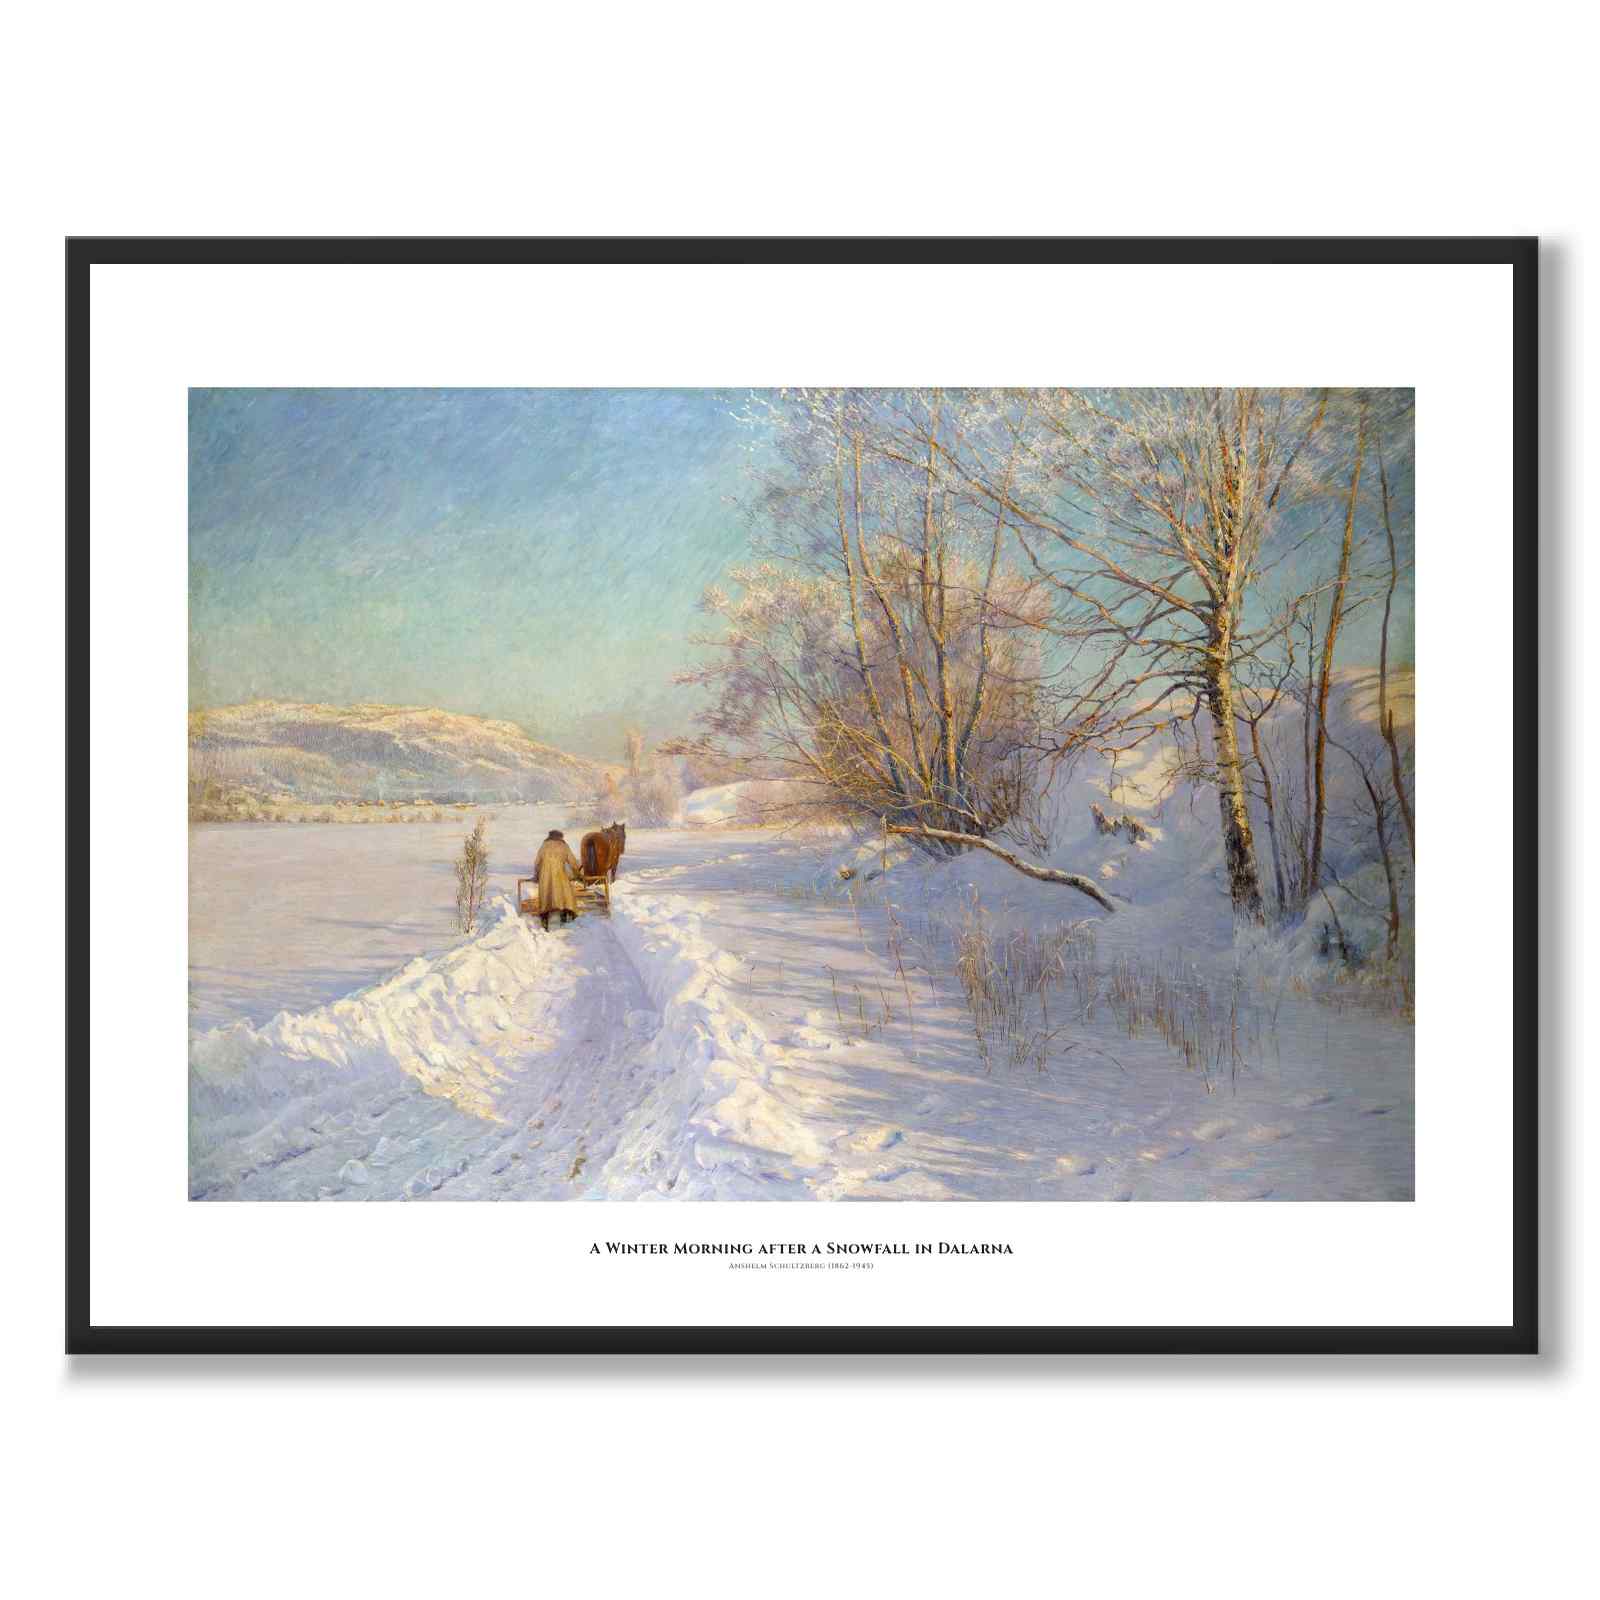 A Winter Morning after a Snowfall in Dalarna - Poster